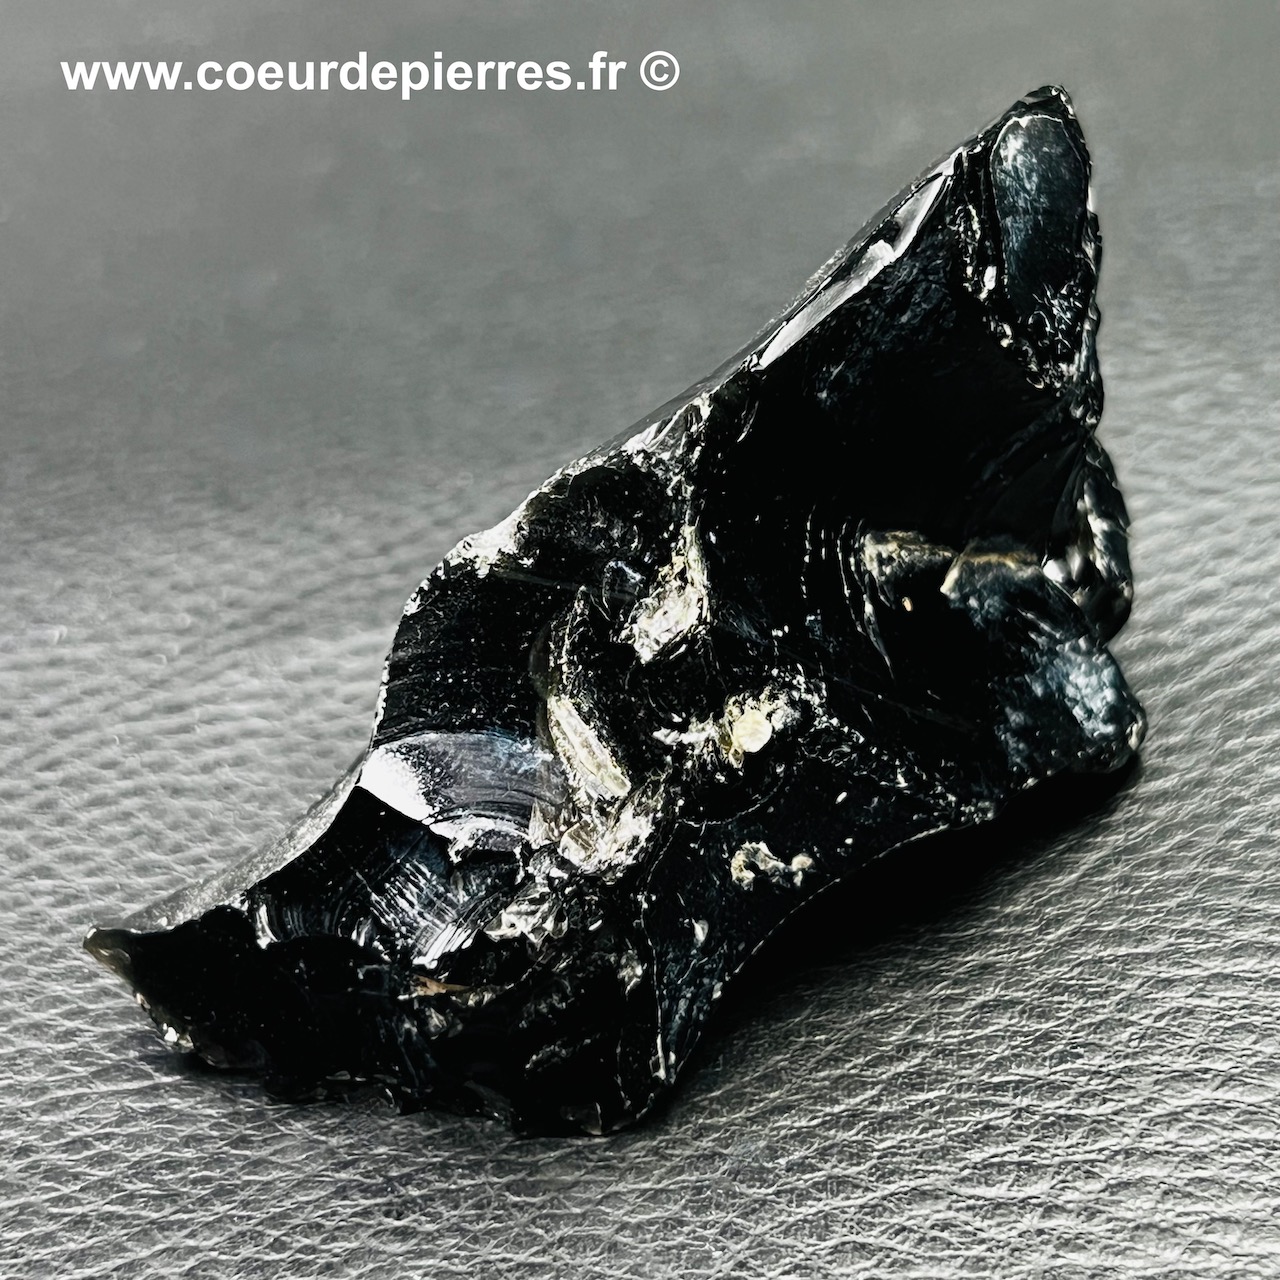 Obsidienne noire brute du Mexique (réf ob7)